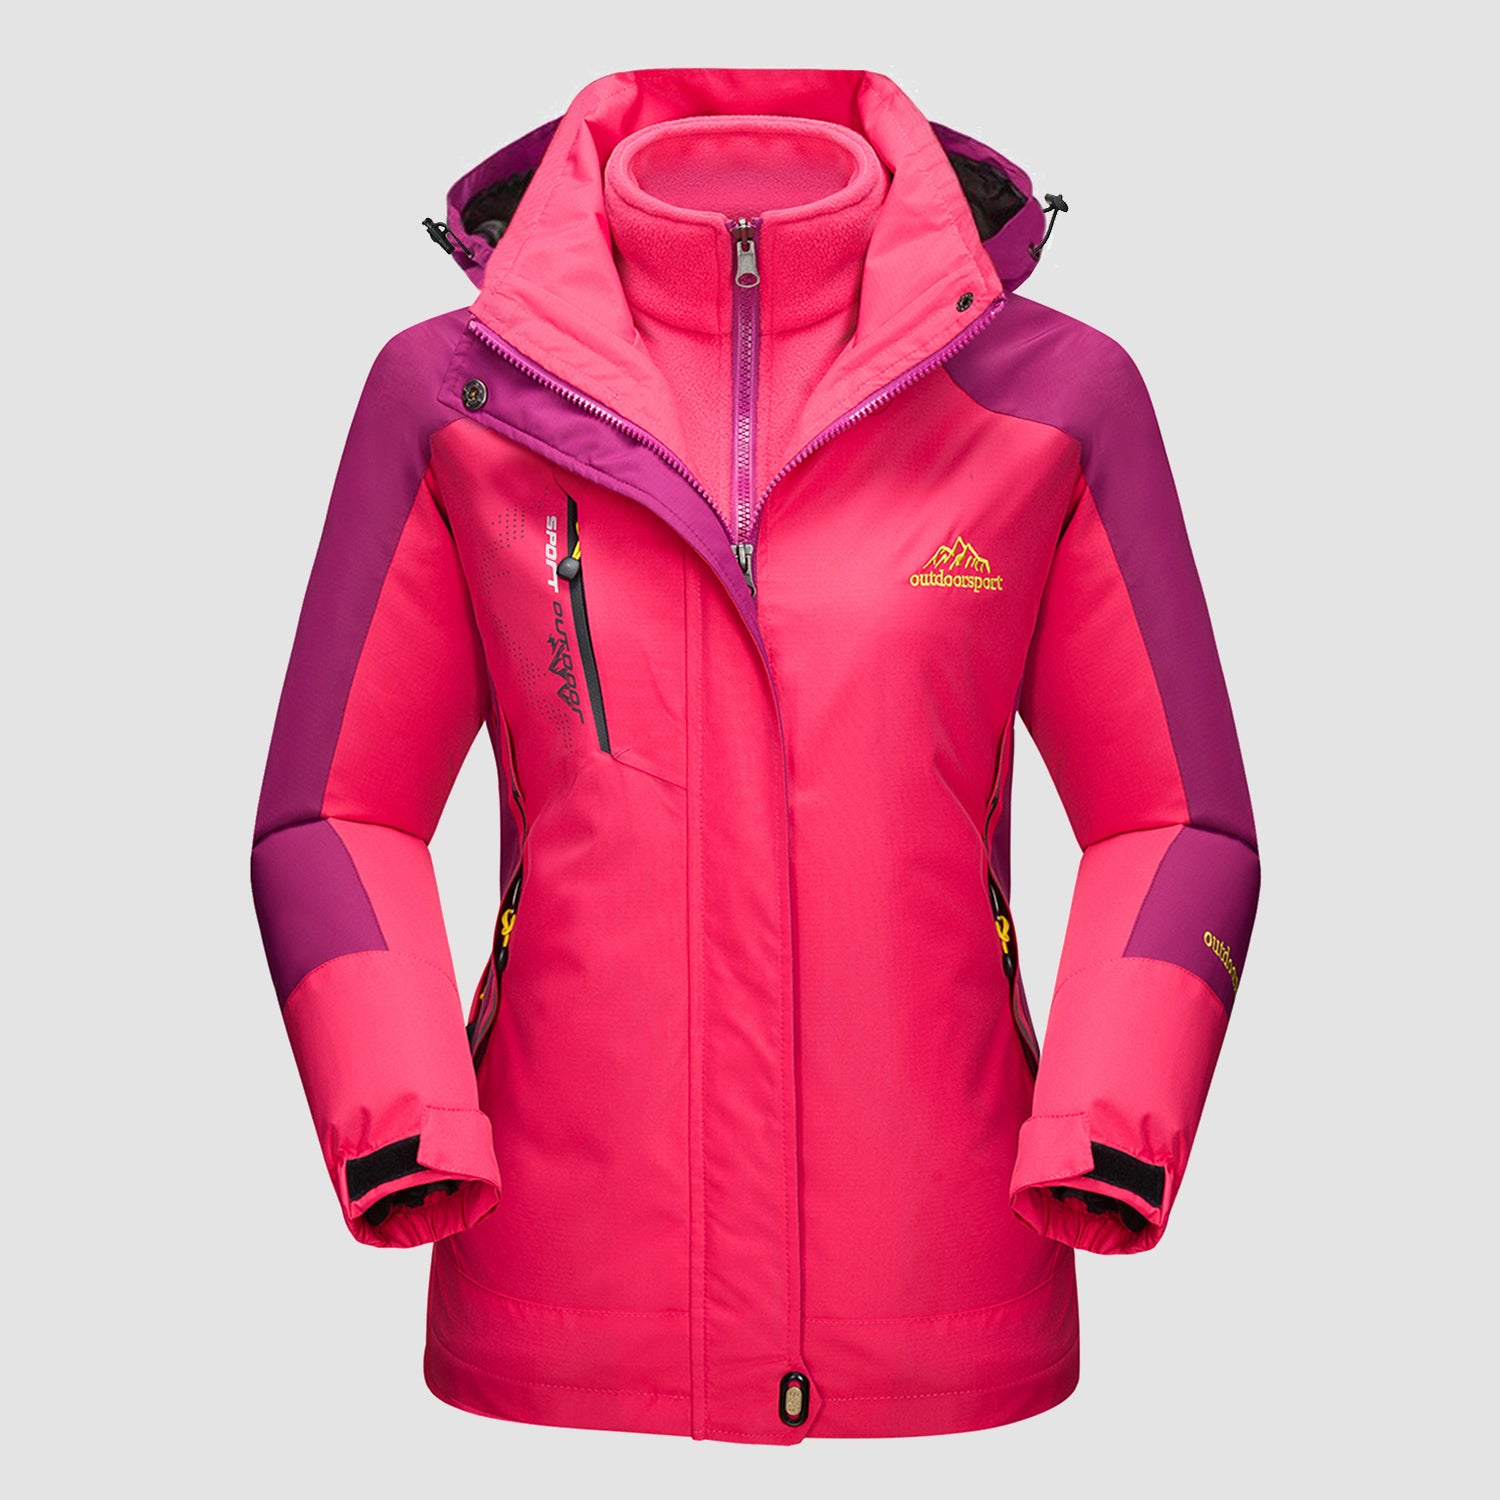 Women's Winter Coats 3-IN-1 Snow Ski Jacket Water Resistant